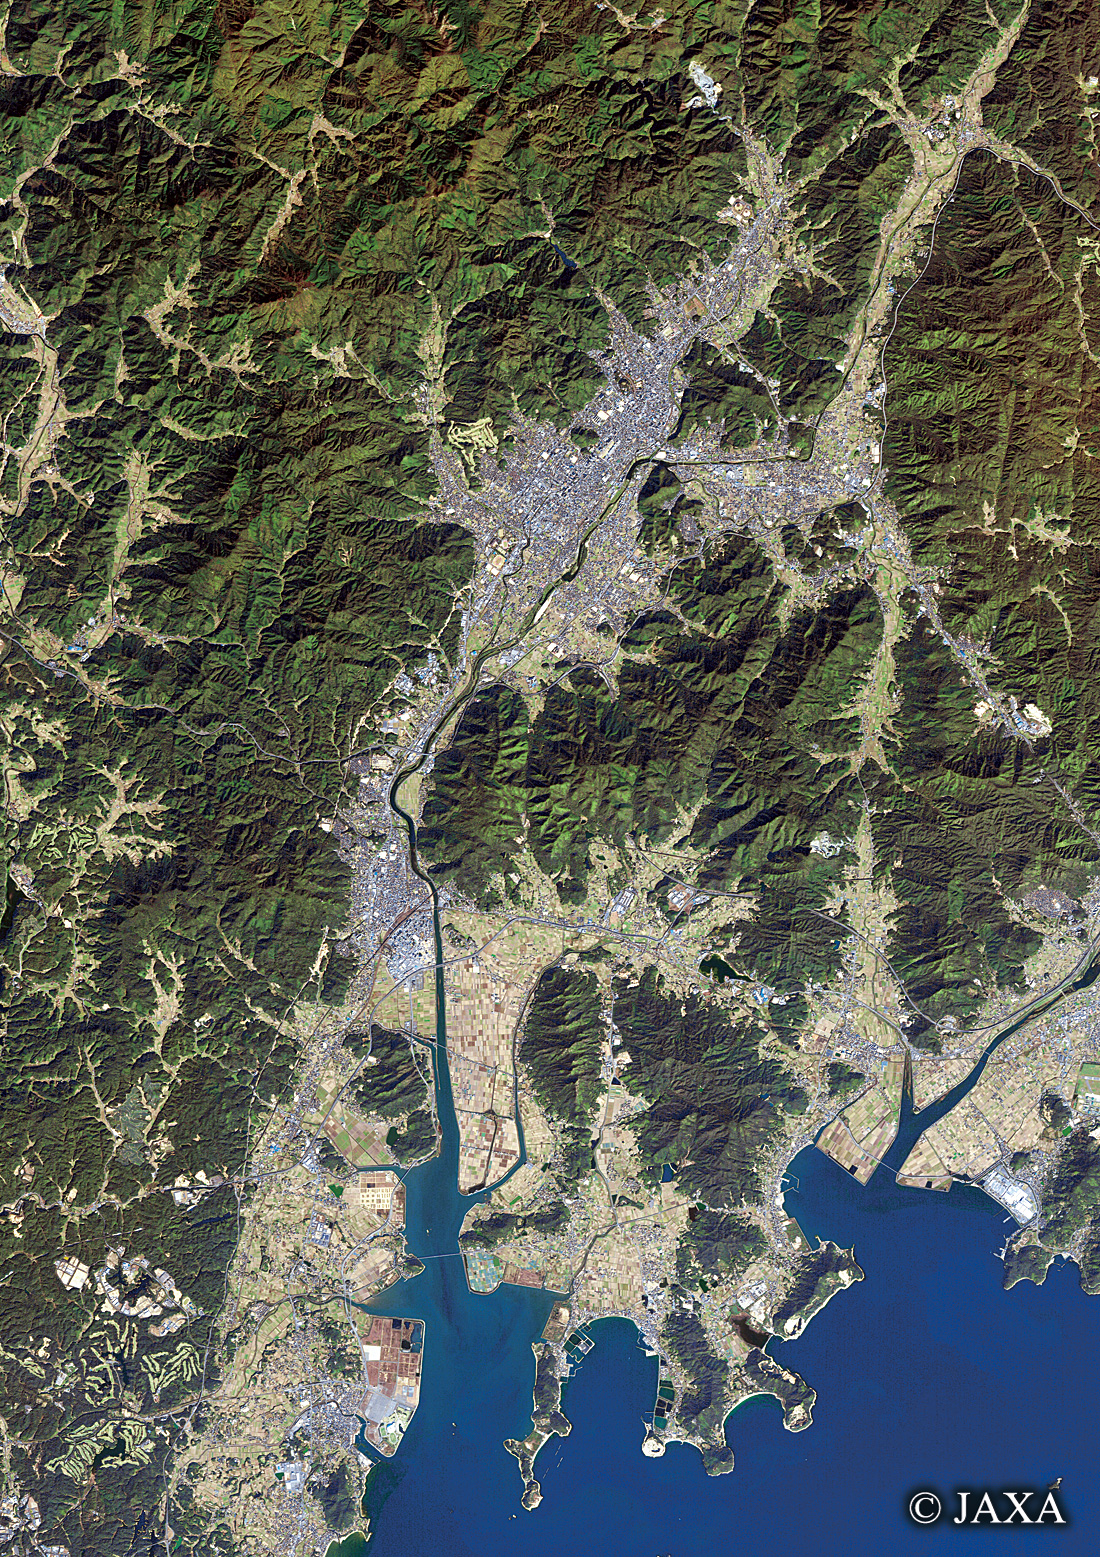 だいちから見た日本の都市 山口市周辺:衛星画像